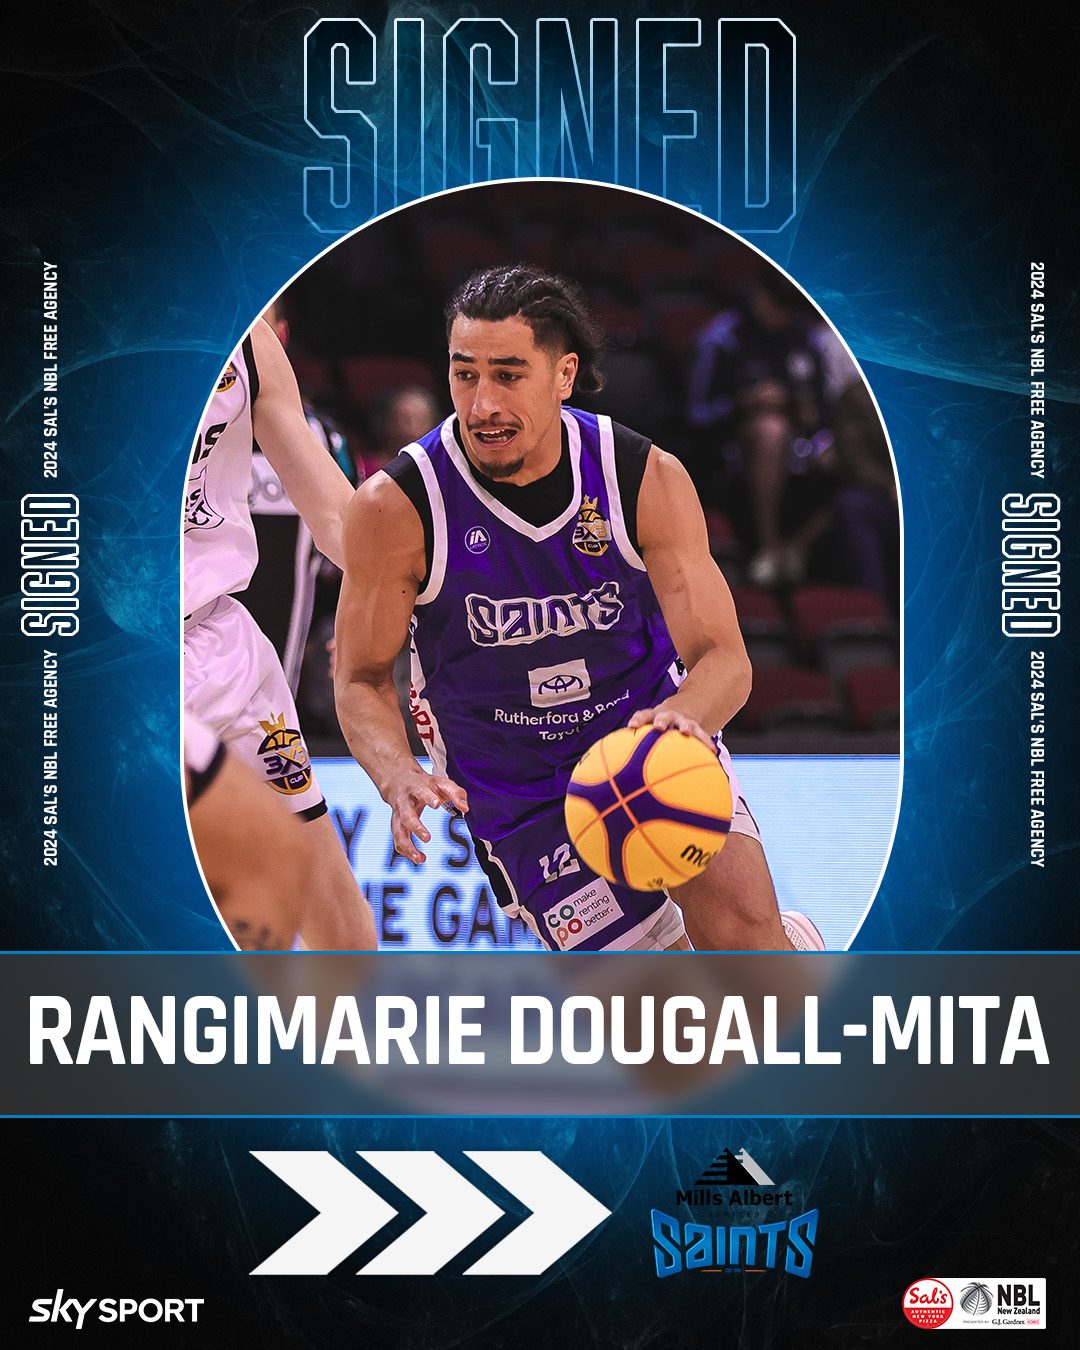 Rangimarie Dougall-Mita